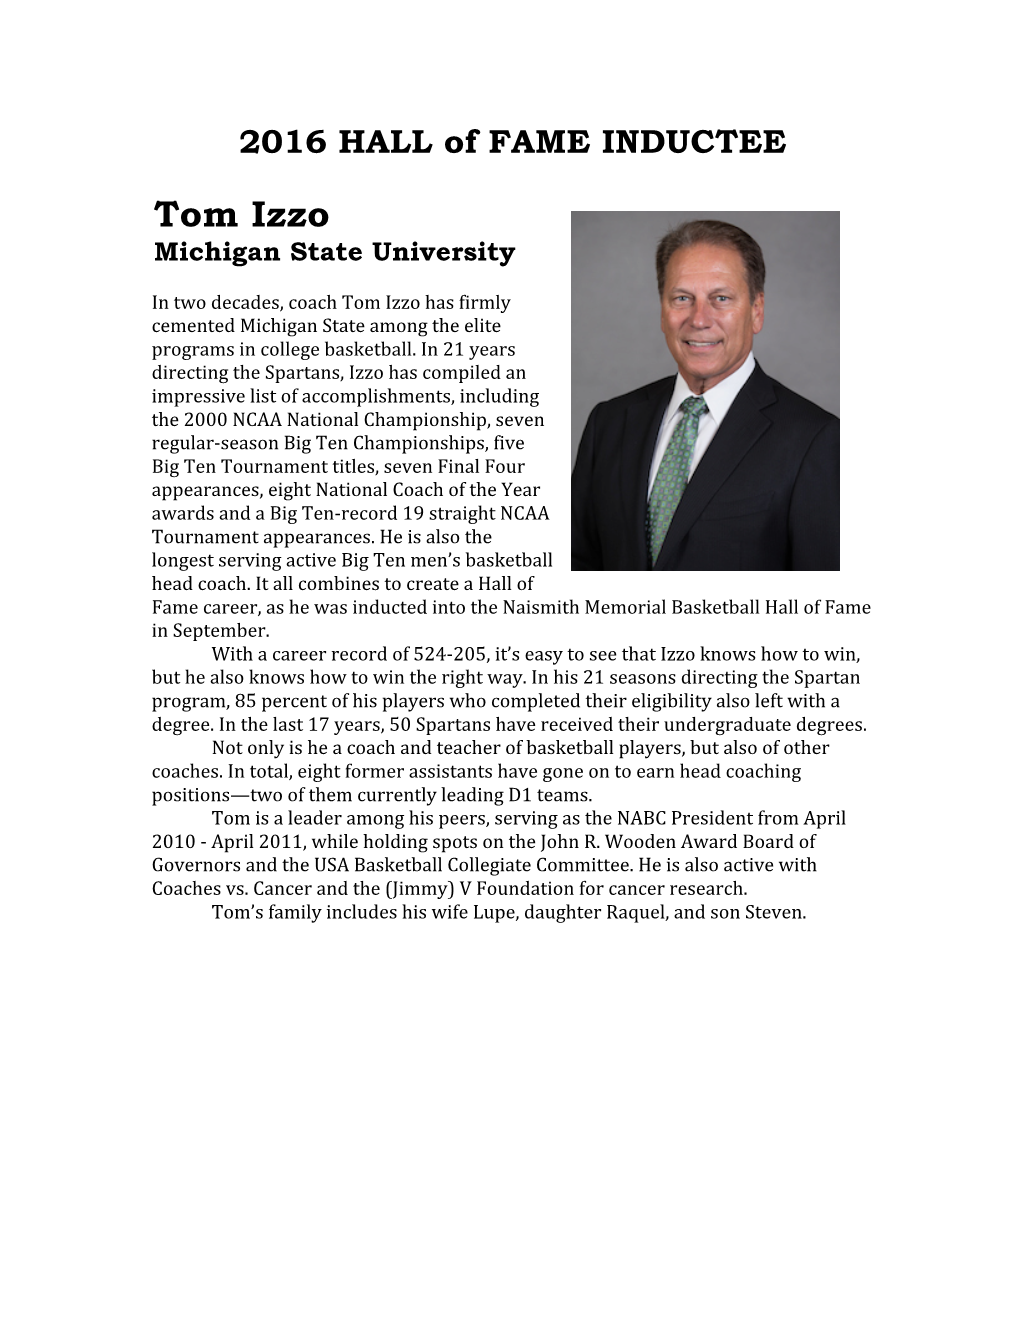 Tom Izzo Michigan State University